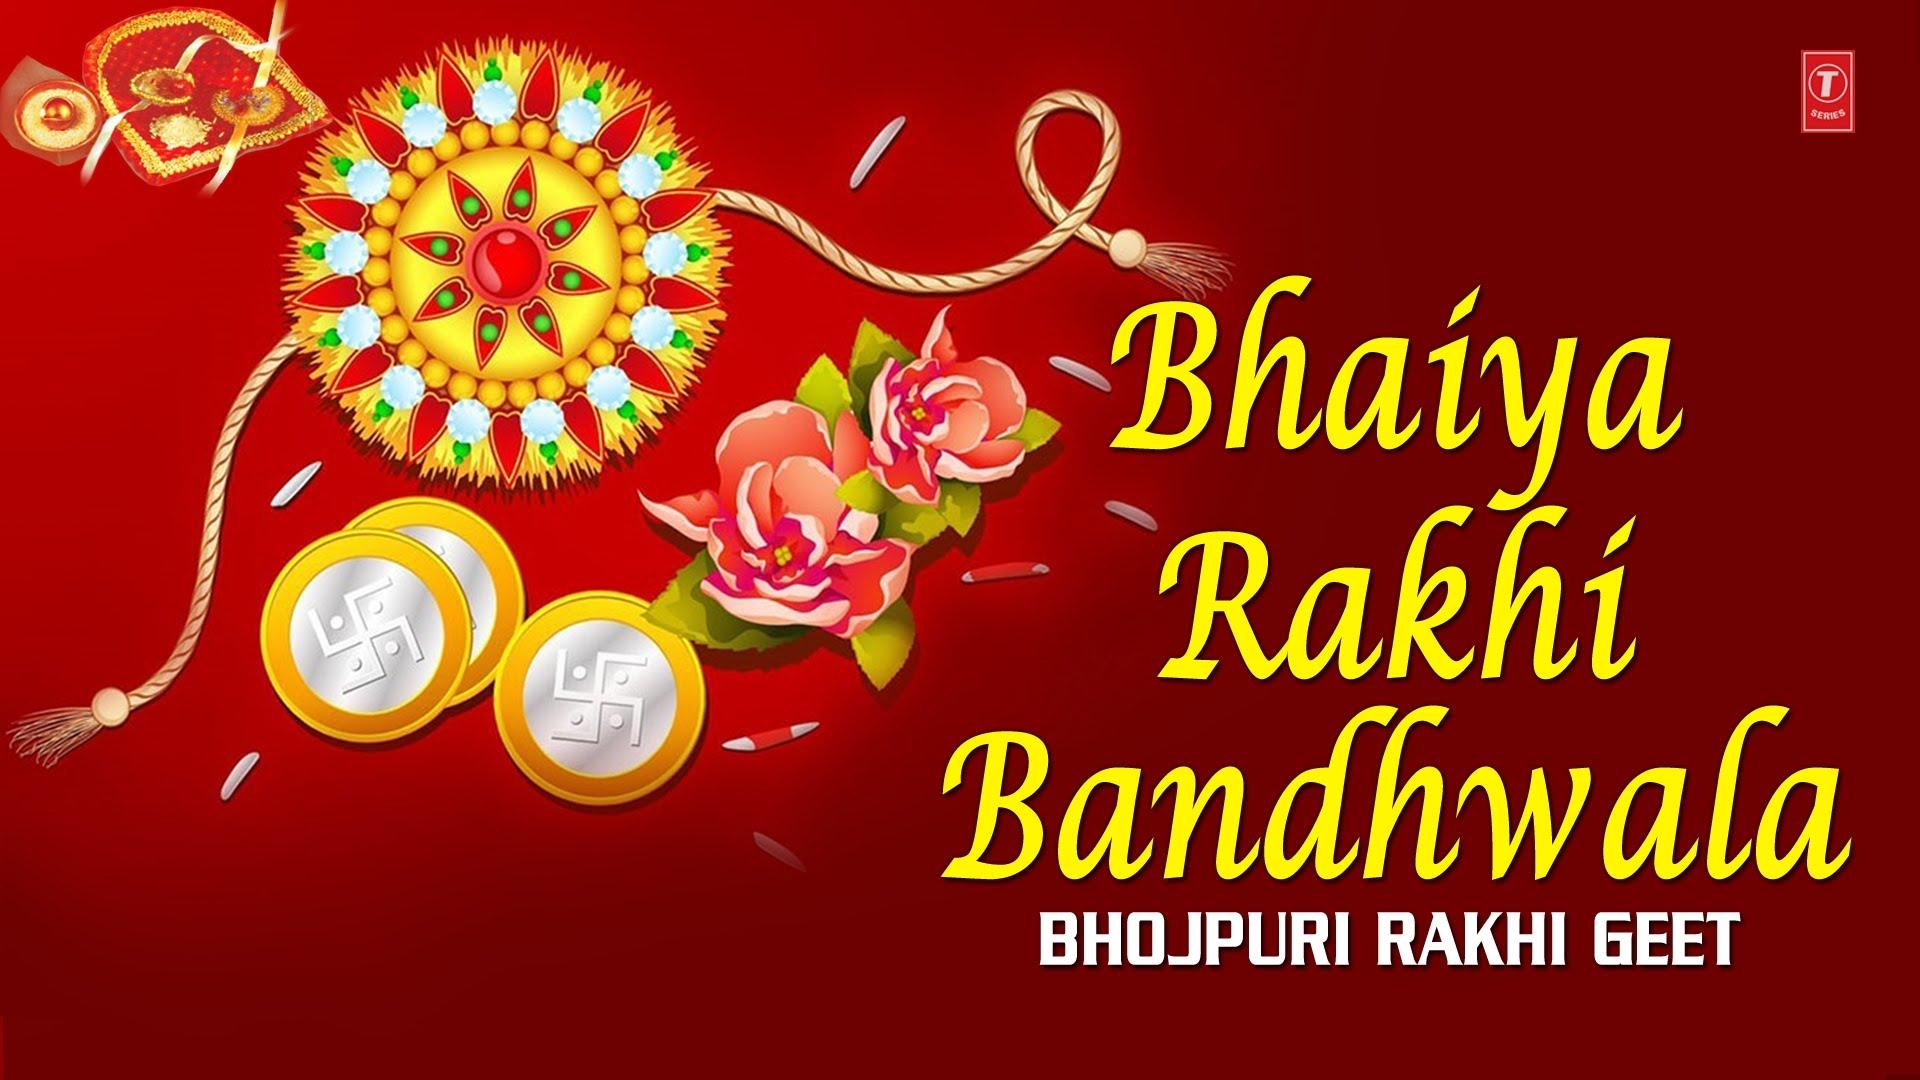 Happy Raksha Bandhan HD Image & Wallpaper